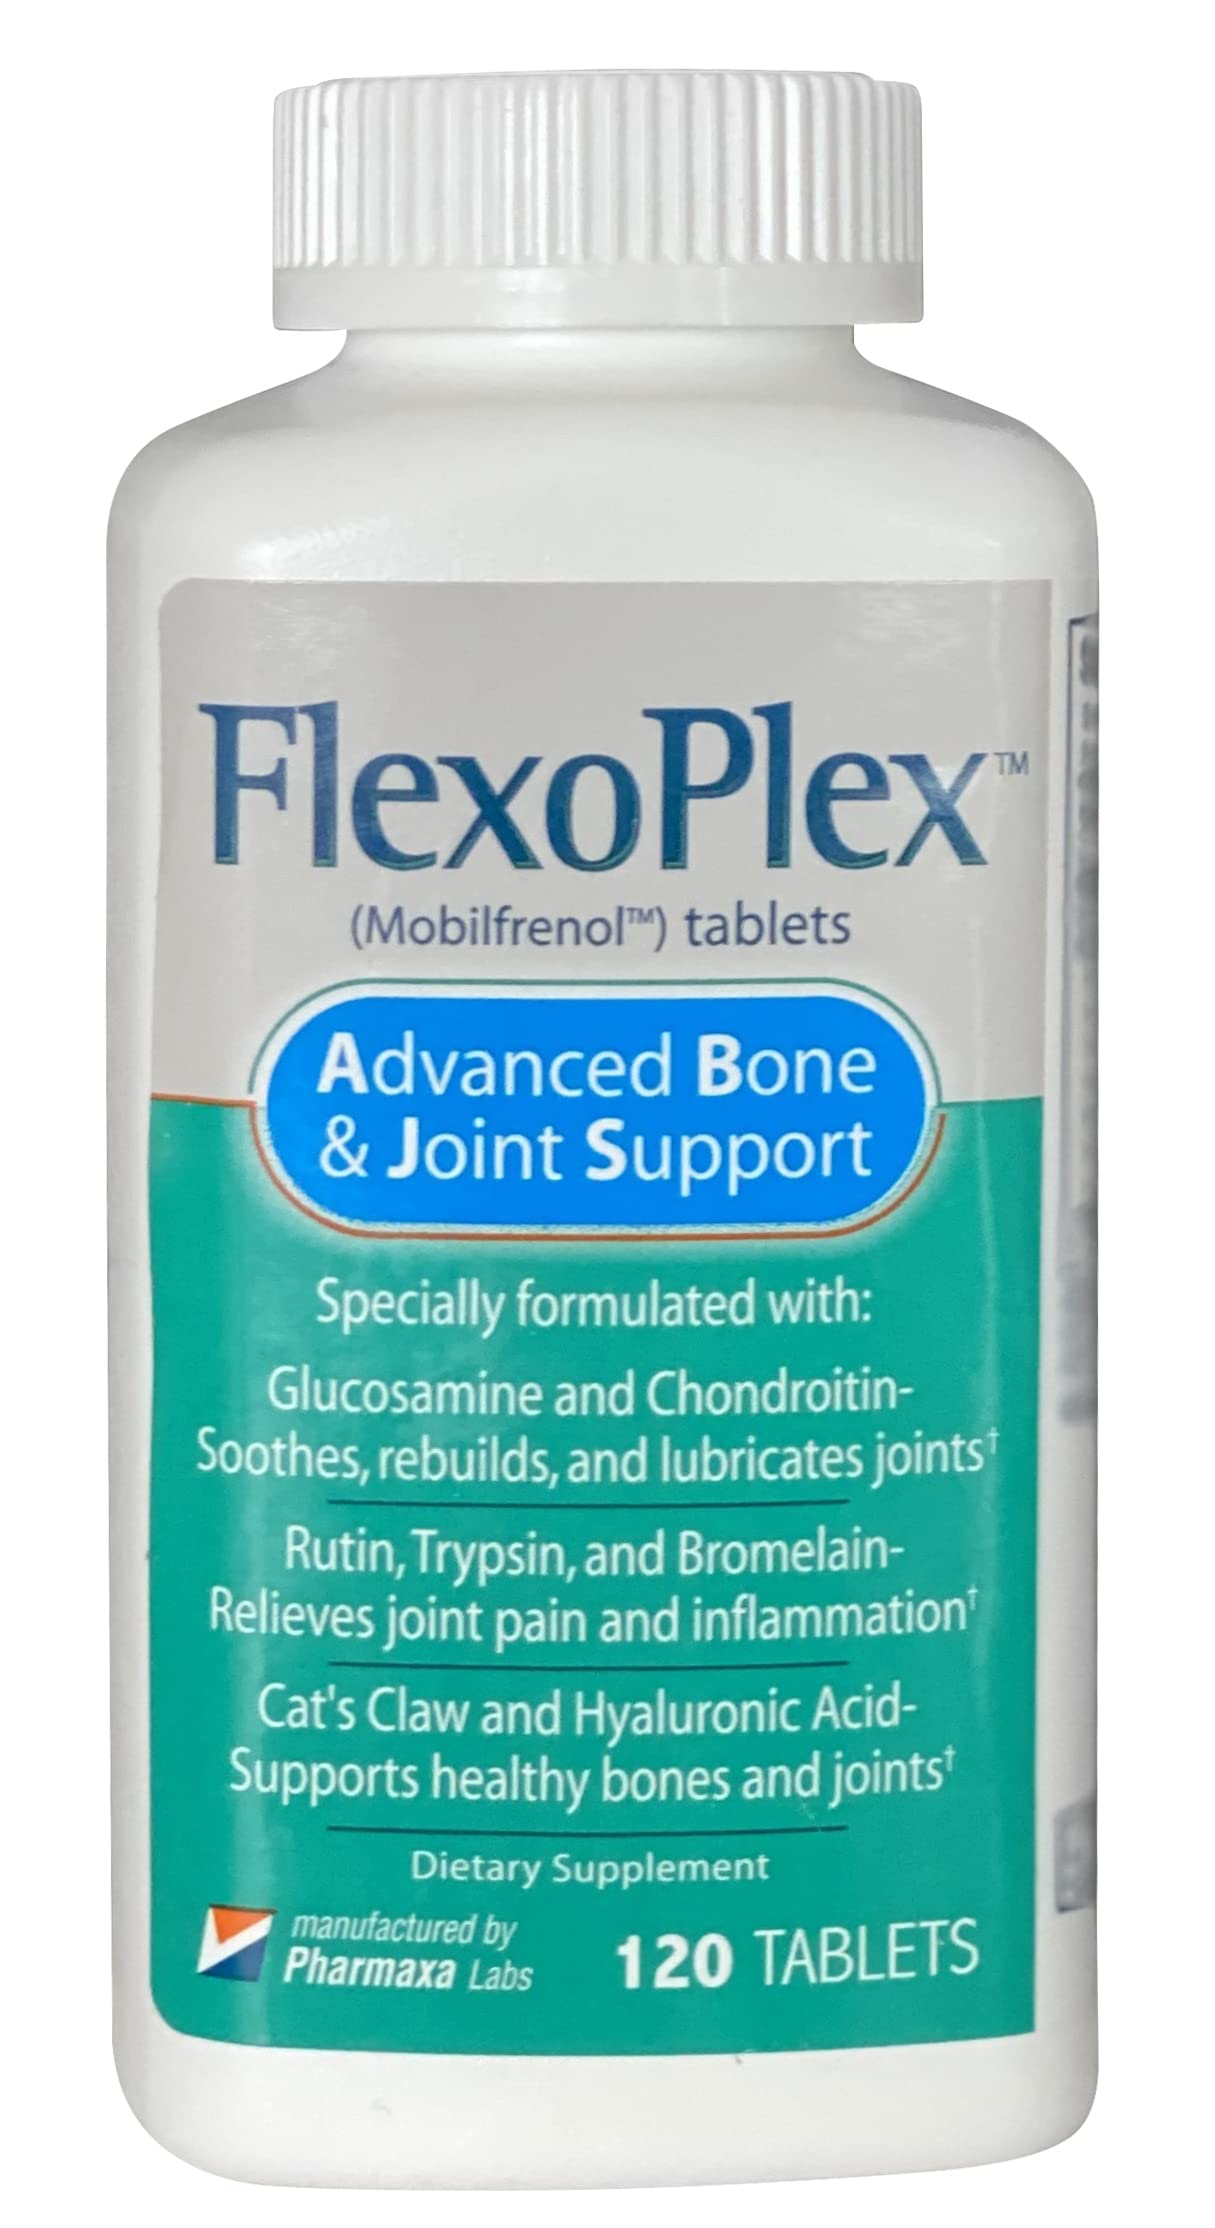 where to buy flexoplex